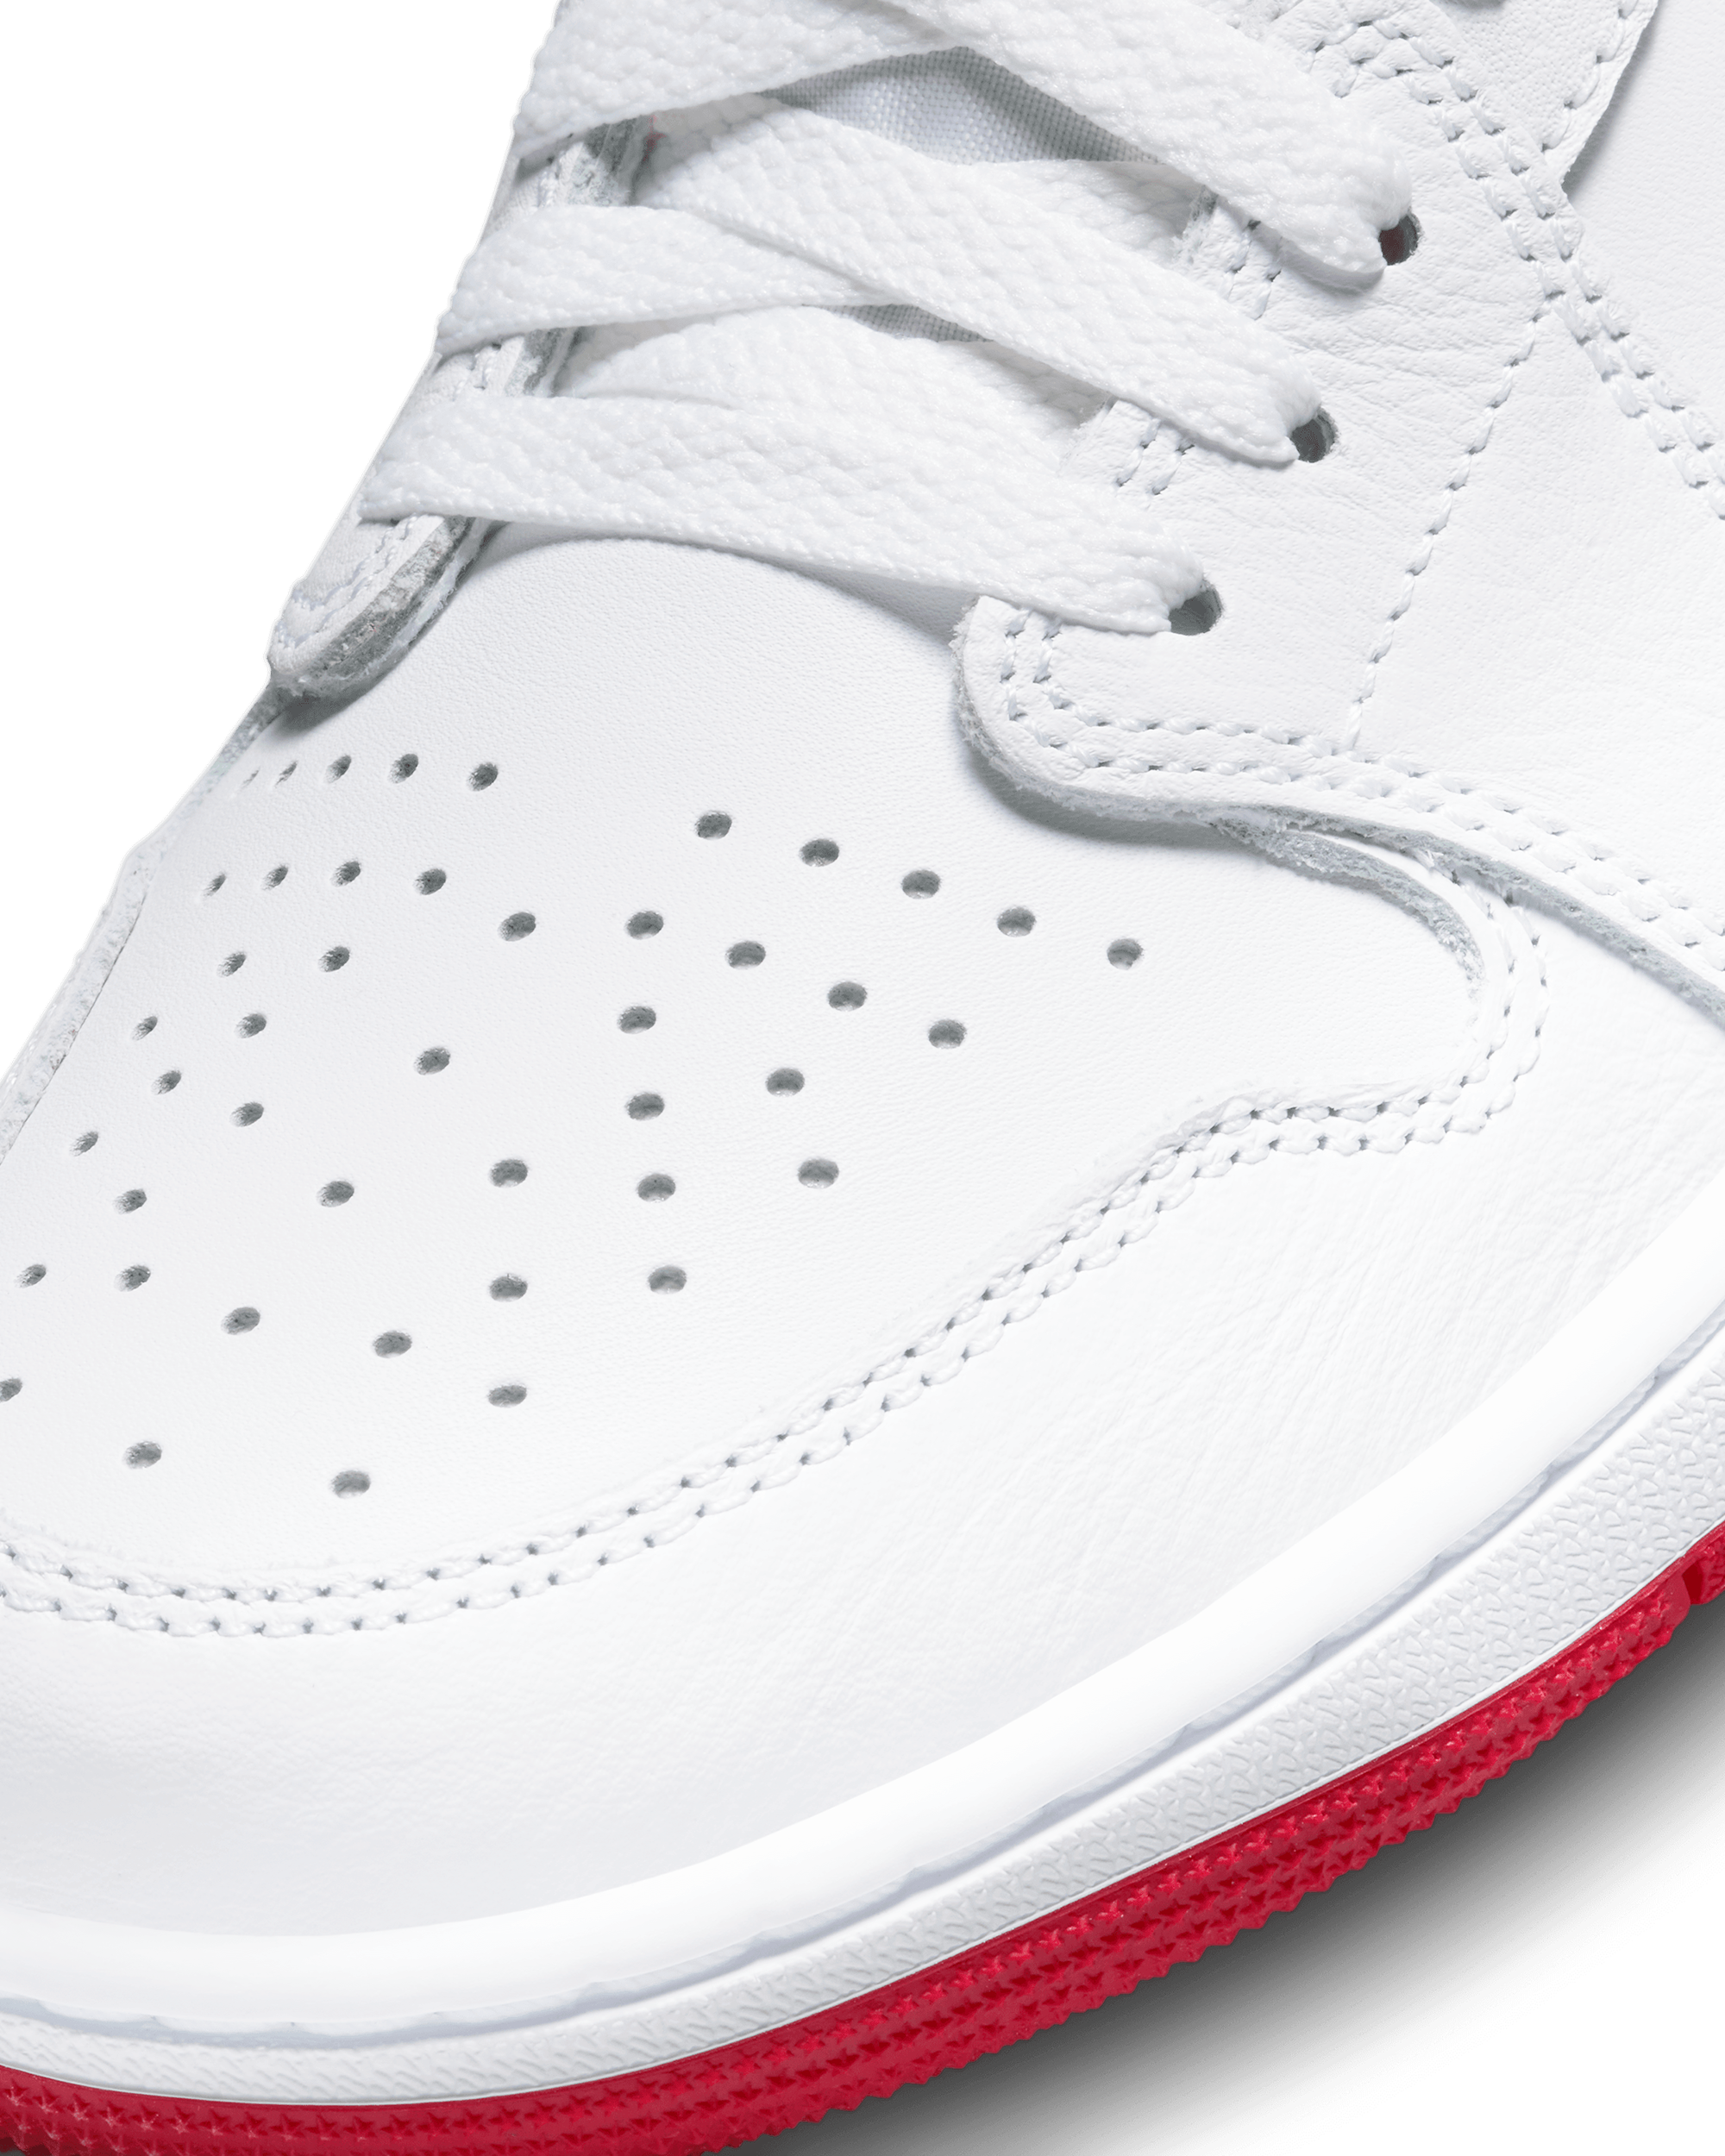 Air Jordan 1 Low OG - White / University Red